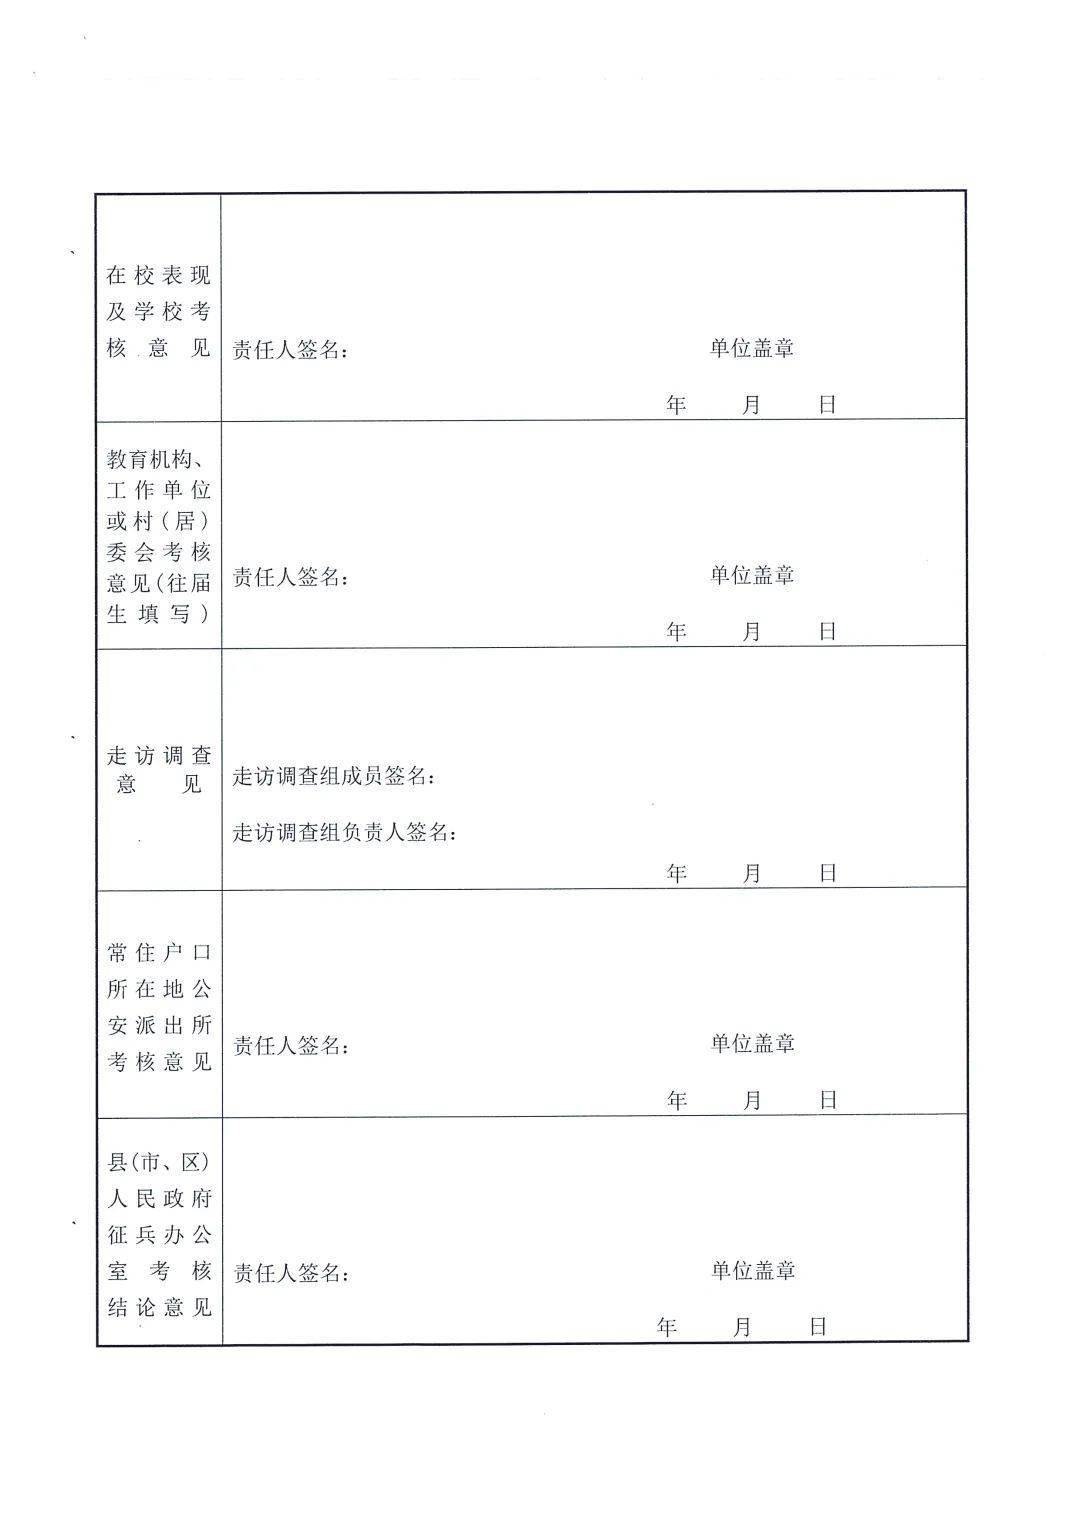 7月20日起政审 贵州军队院校招生政治考核工作要求发布